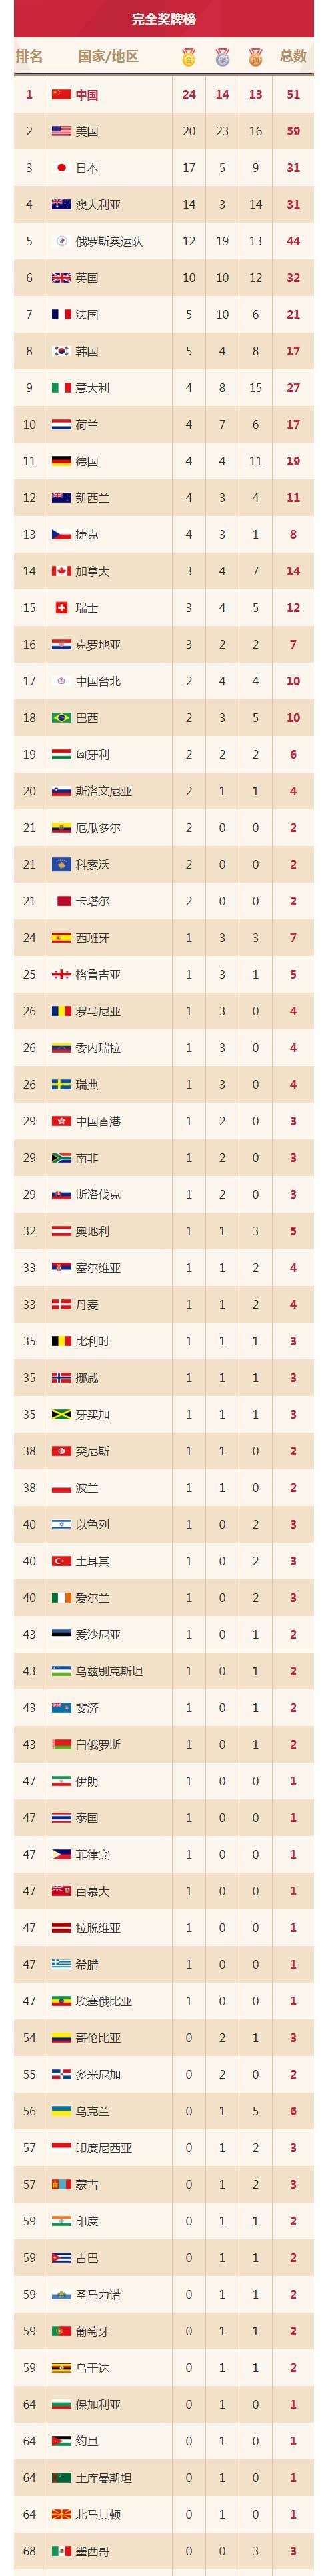 我国在历届夏季奥运会金榜上的排名,以及所获金牌总数,奖牌总数,奖牌分布等情况